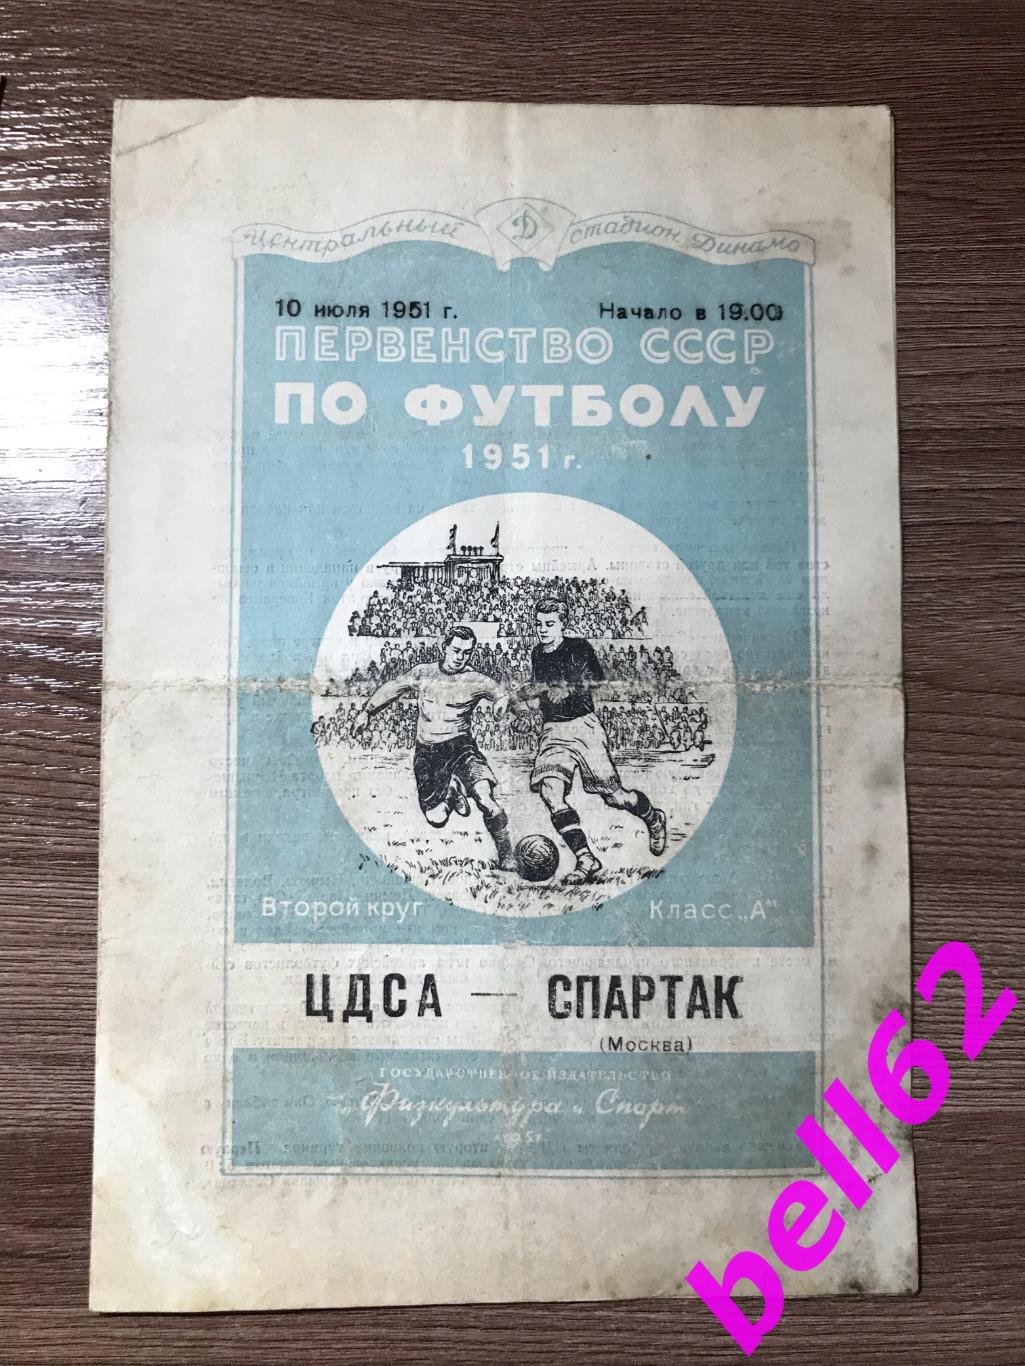 ЦДСА Москва-Спартак Москва-10.07.1951 г.